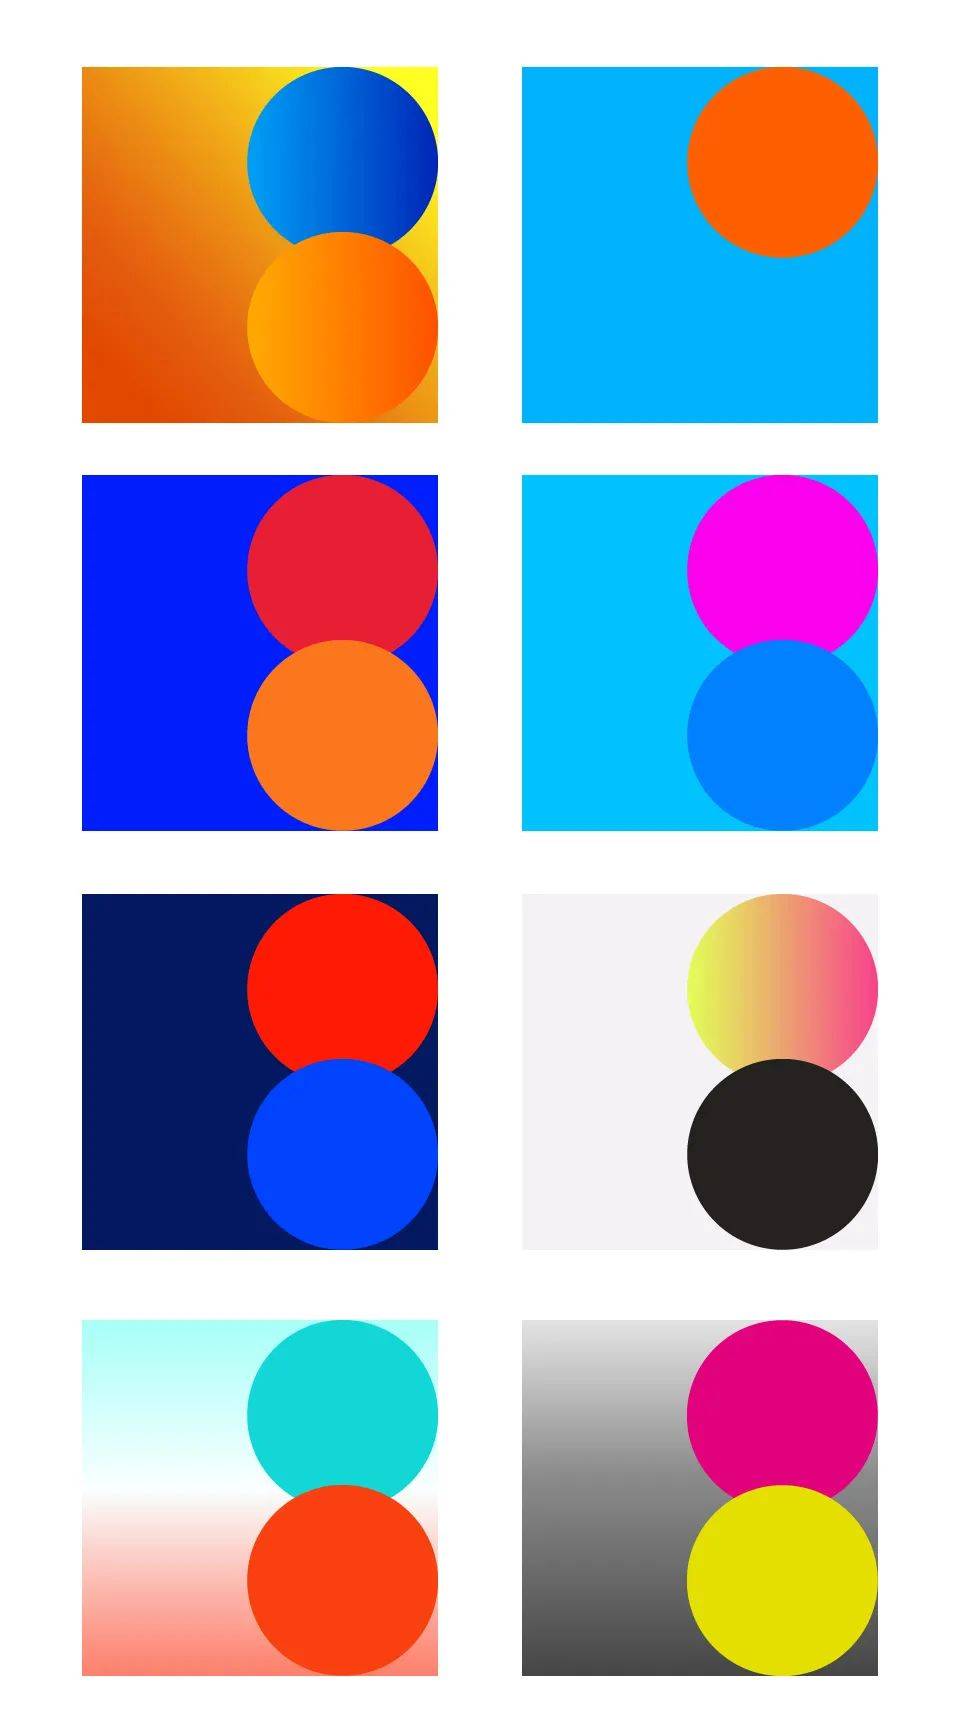 要想让色彩动起来,对比一定要强,可以是色相对比,也可以是明度对比和